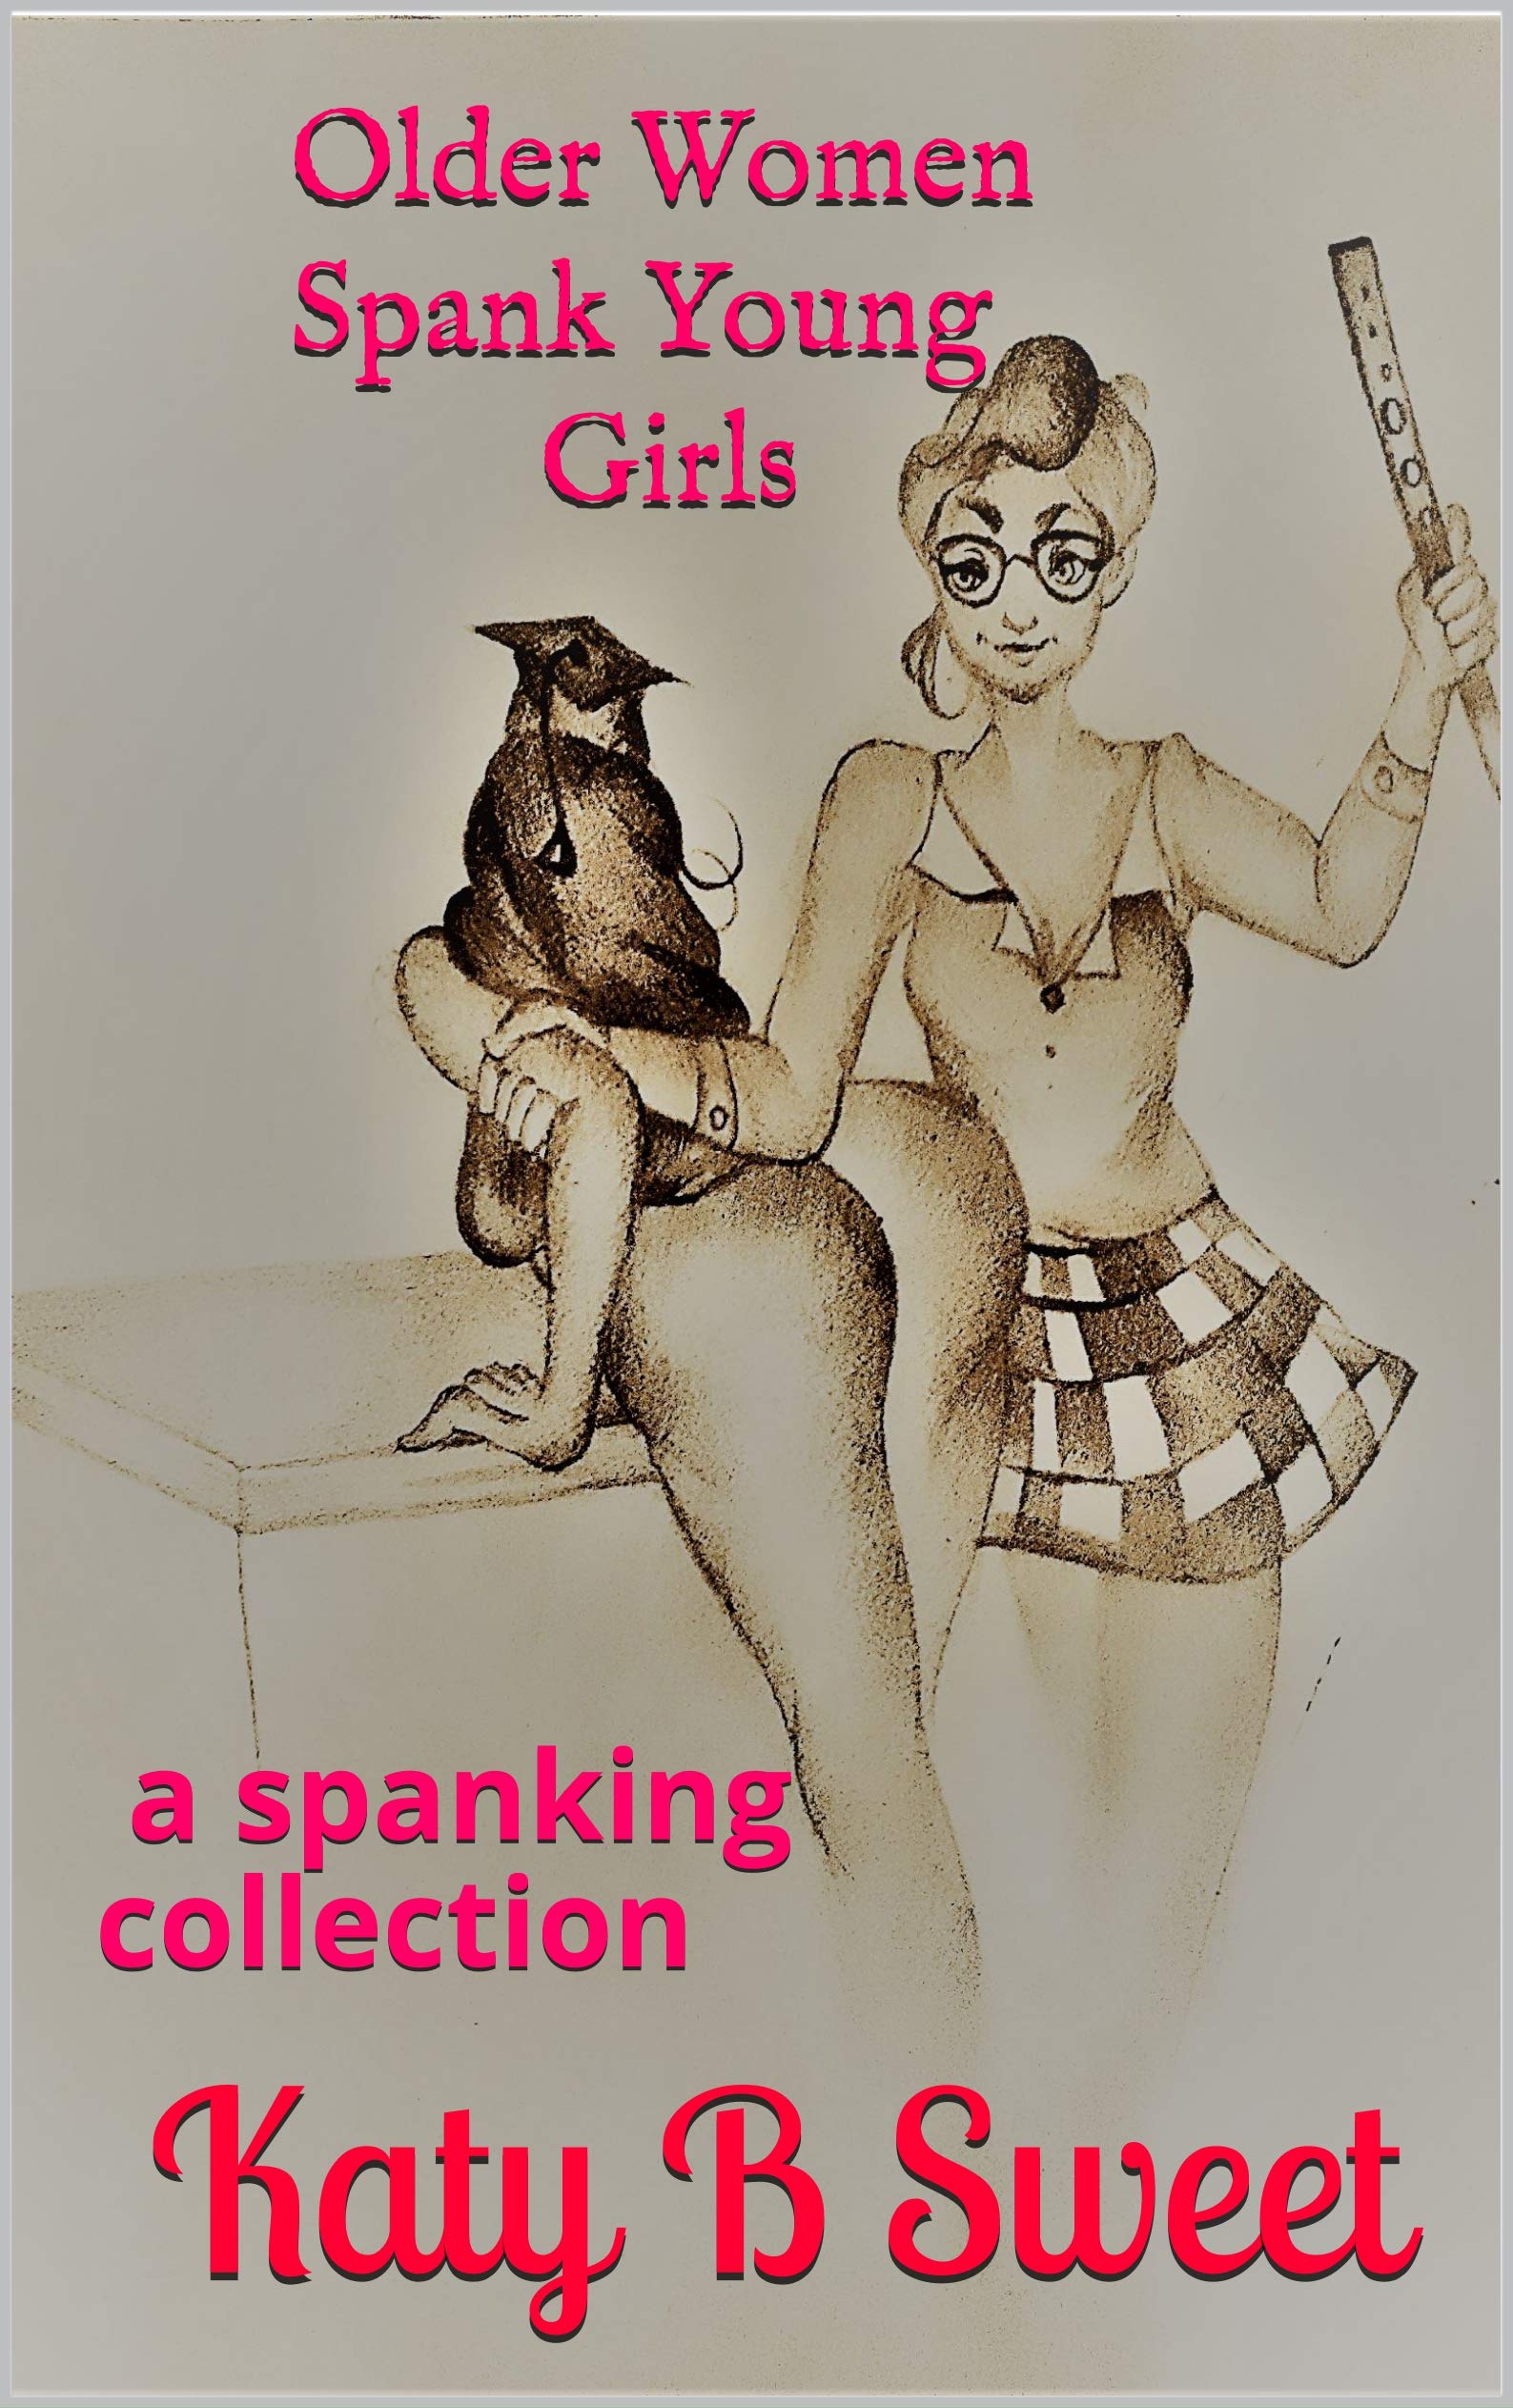 christian monteverde recommends spanking girl on girl pic